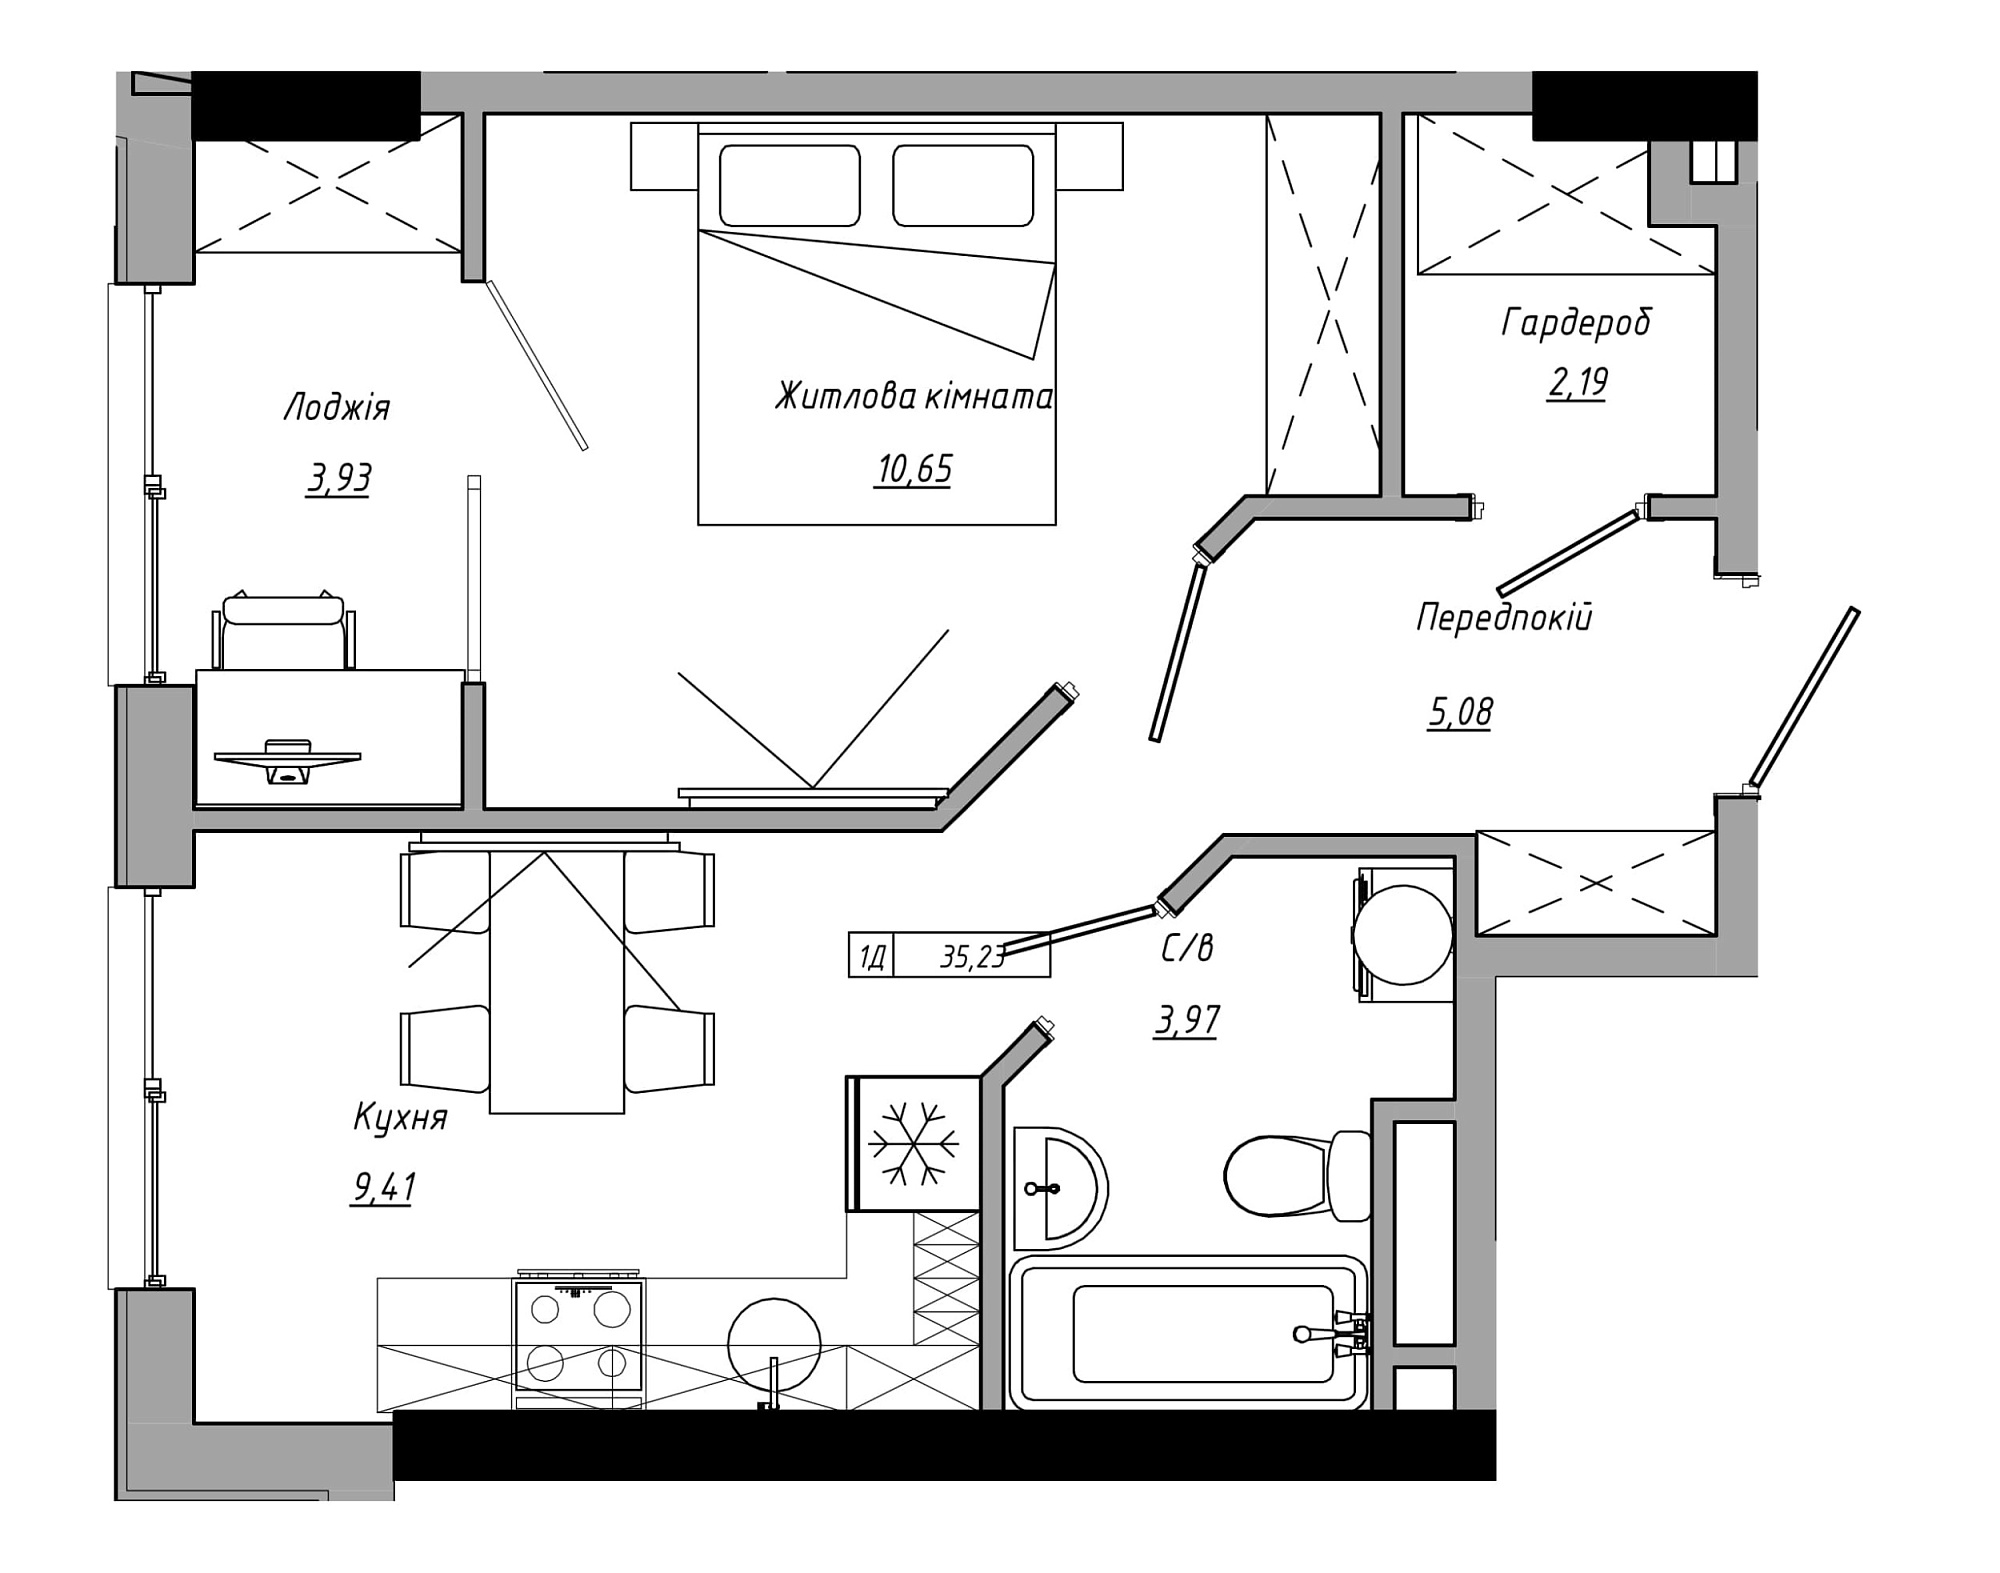 Планування 1-к квартира площею 35.23м2, AB-21-05/00006.